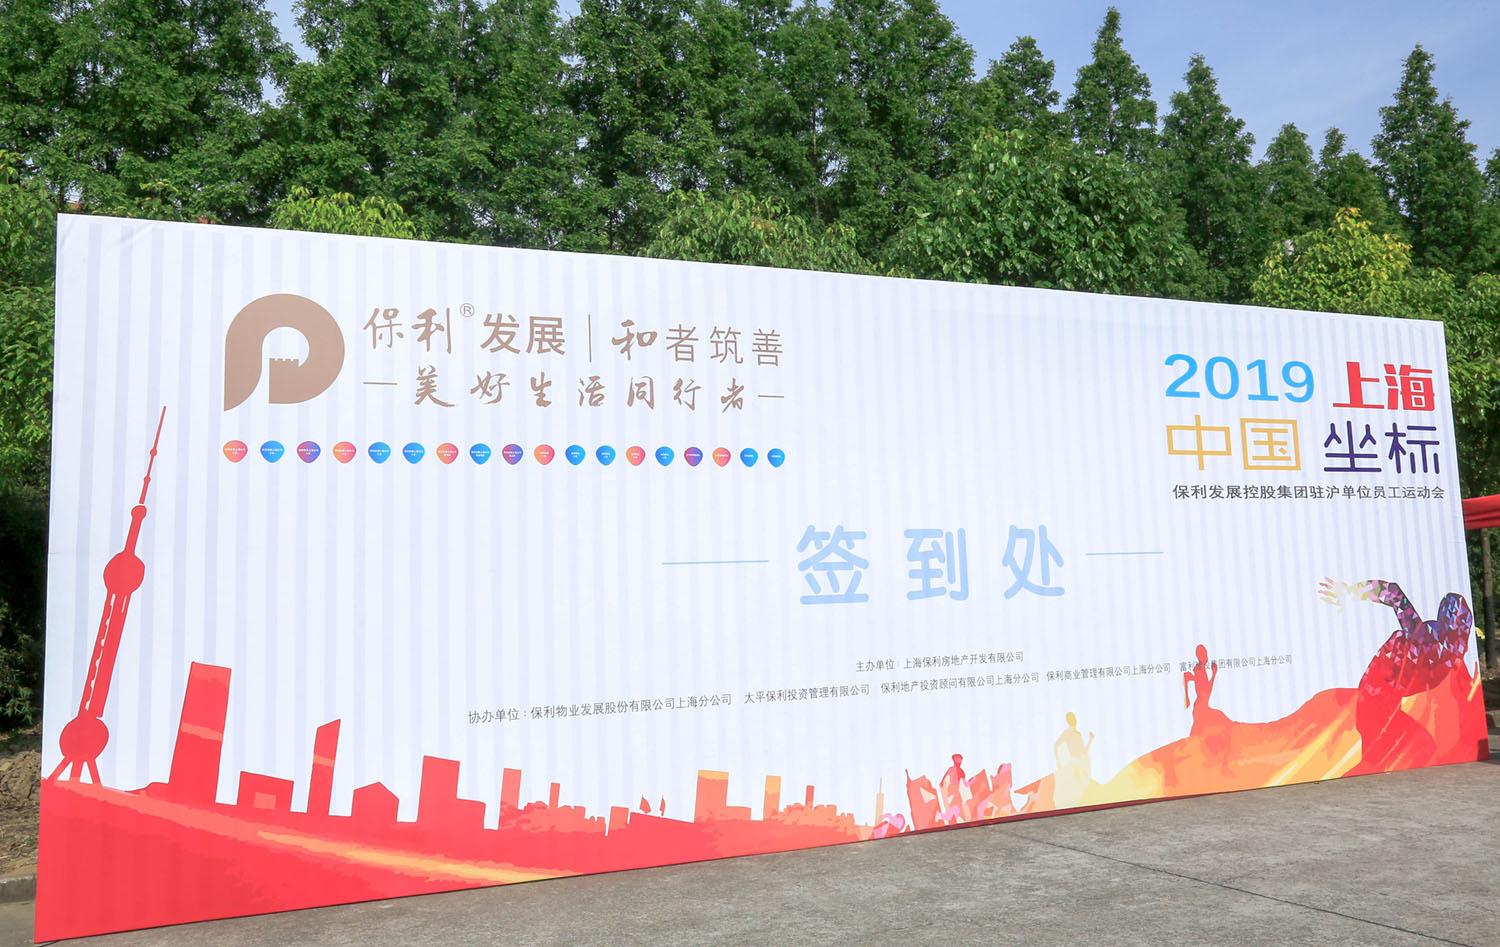 上海企业嘉年华多机位云摄影 保利驻沪人员运动会摄